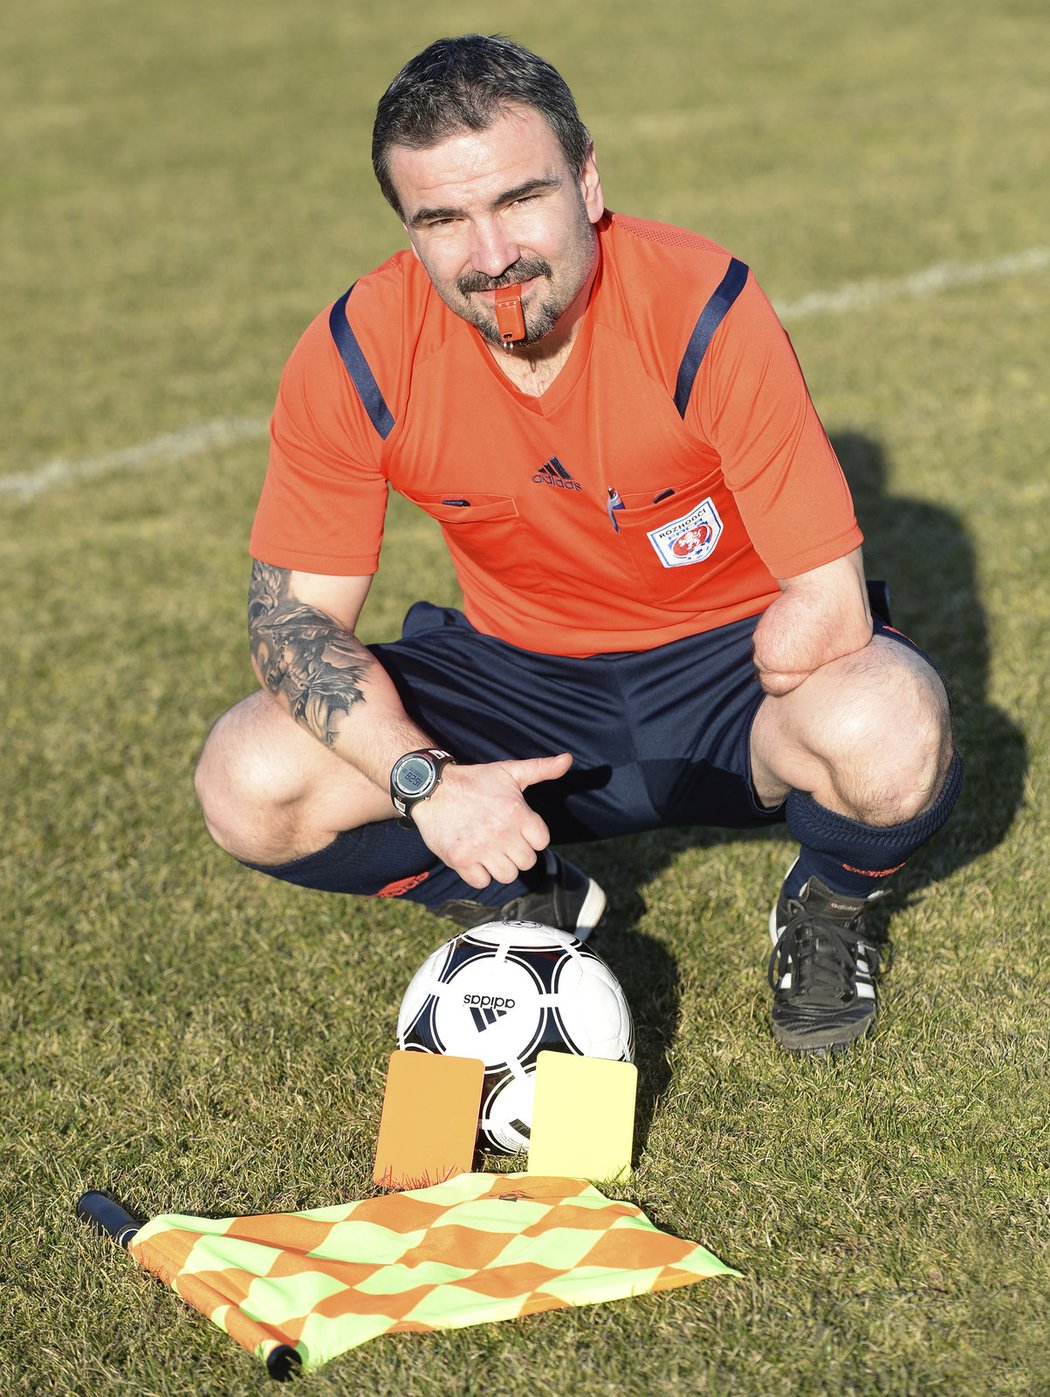 Fotbalový sudí Jiří Říha z Úpice na Trutnovsku píská jako hlavní, ale někdy funguje i jako asistent. Po vážném zranění, kdy přišel o část levé ruky, prohlašuje, že jej fotbal vrátil do života.